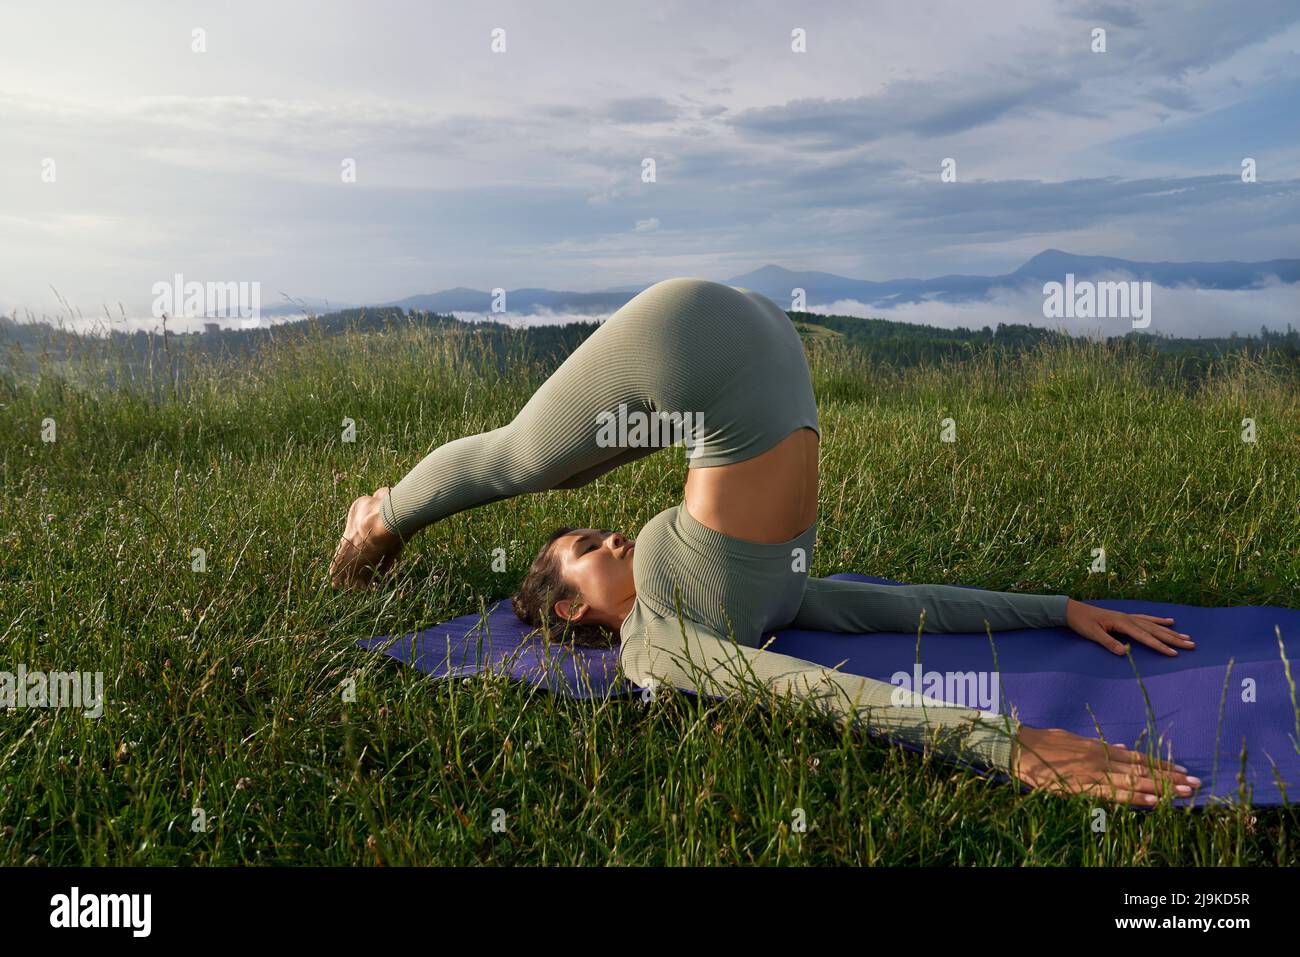 Charmante sportliche Frau in der aktiven unterwegs Stretching für Körper auf Yoga-Matte inmitten der grünen Natur. Outdoor-Aktivitäten und gesunde Lebensstile Konzept. Stockfoto